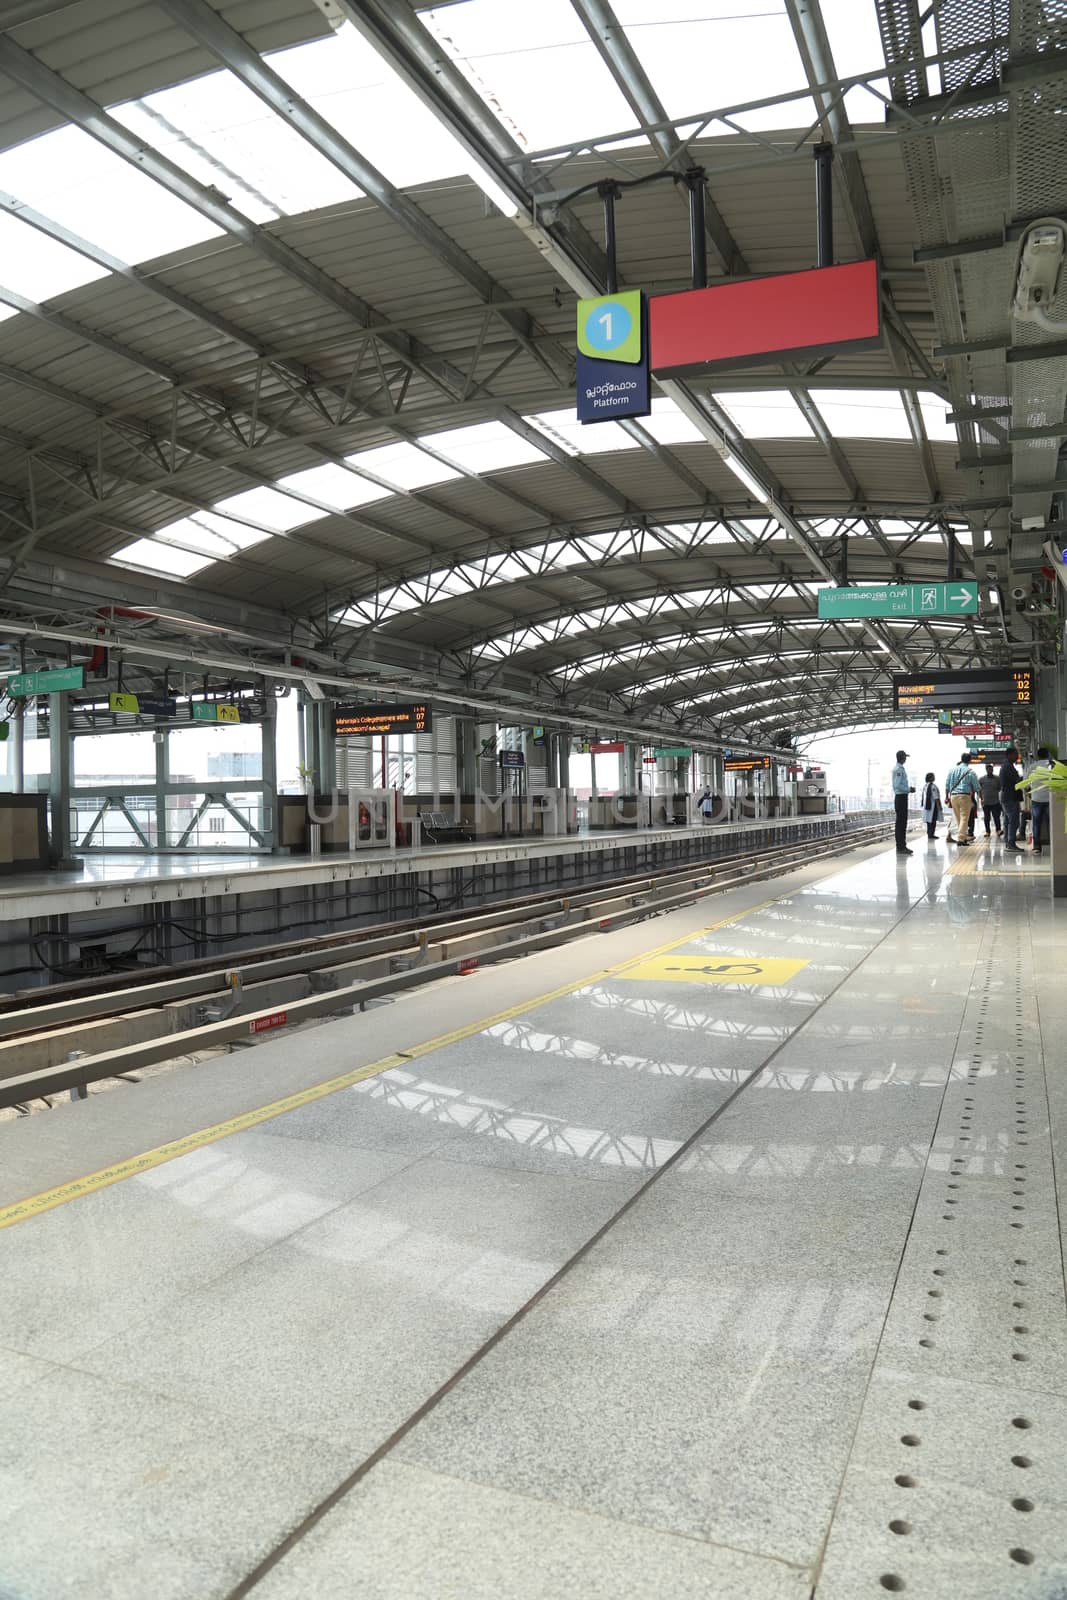 Metro Train station by rajastills